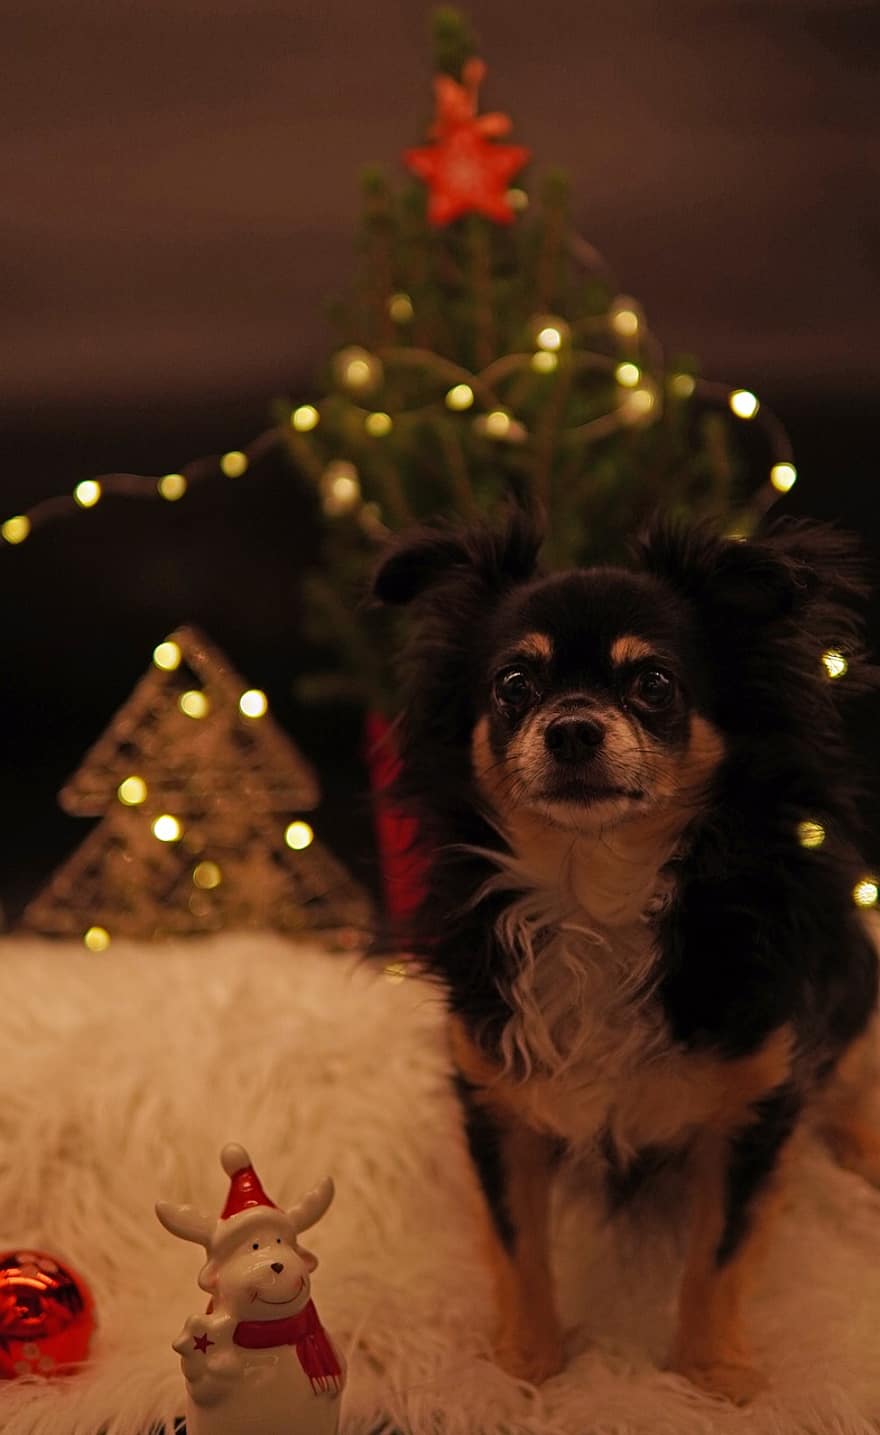 anjing, chihuahua, pohon cemara, hari Natal, Selamat berlibur, kartu Natal, lampu, dekorasi Natal, hewan, imut